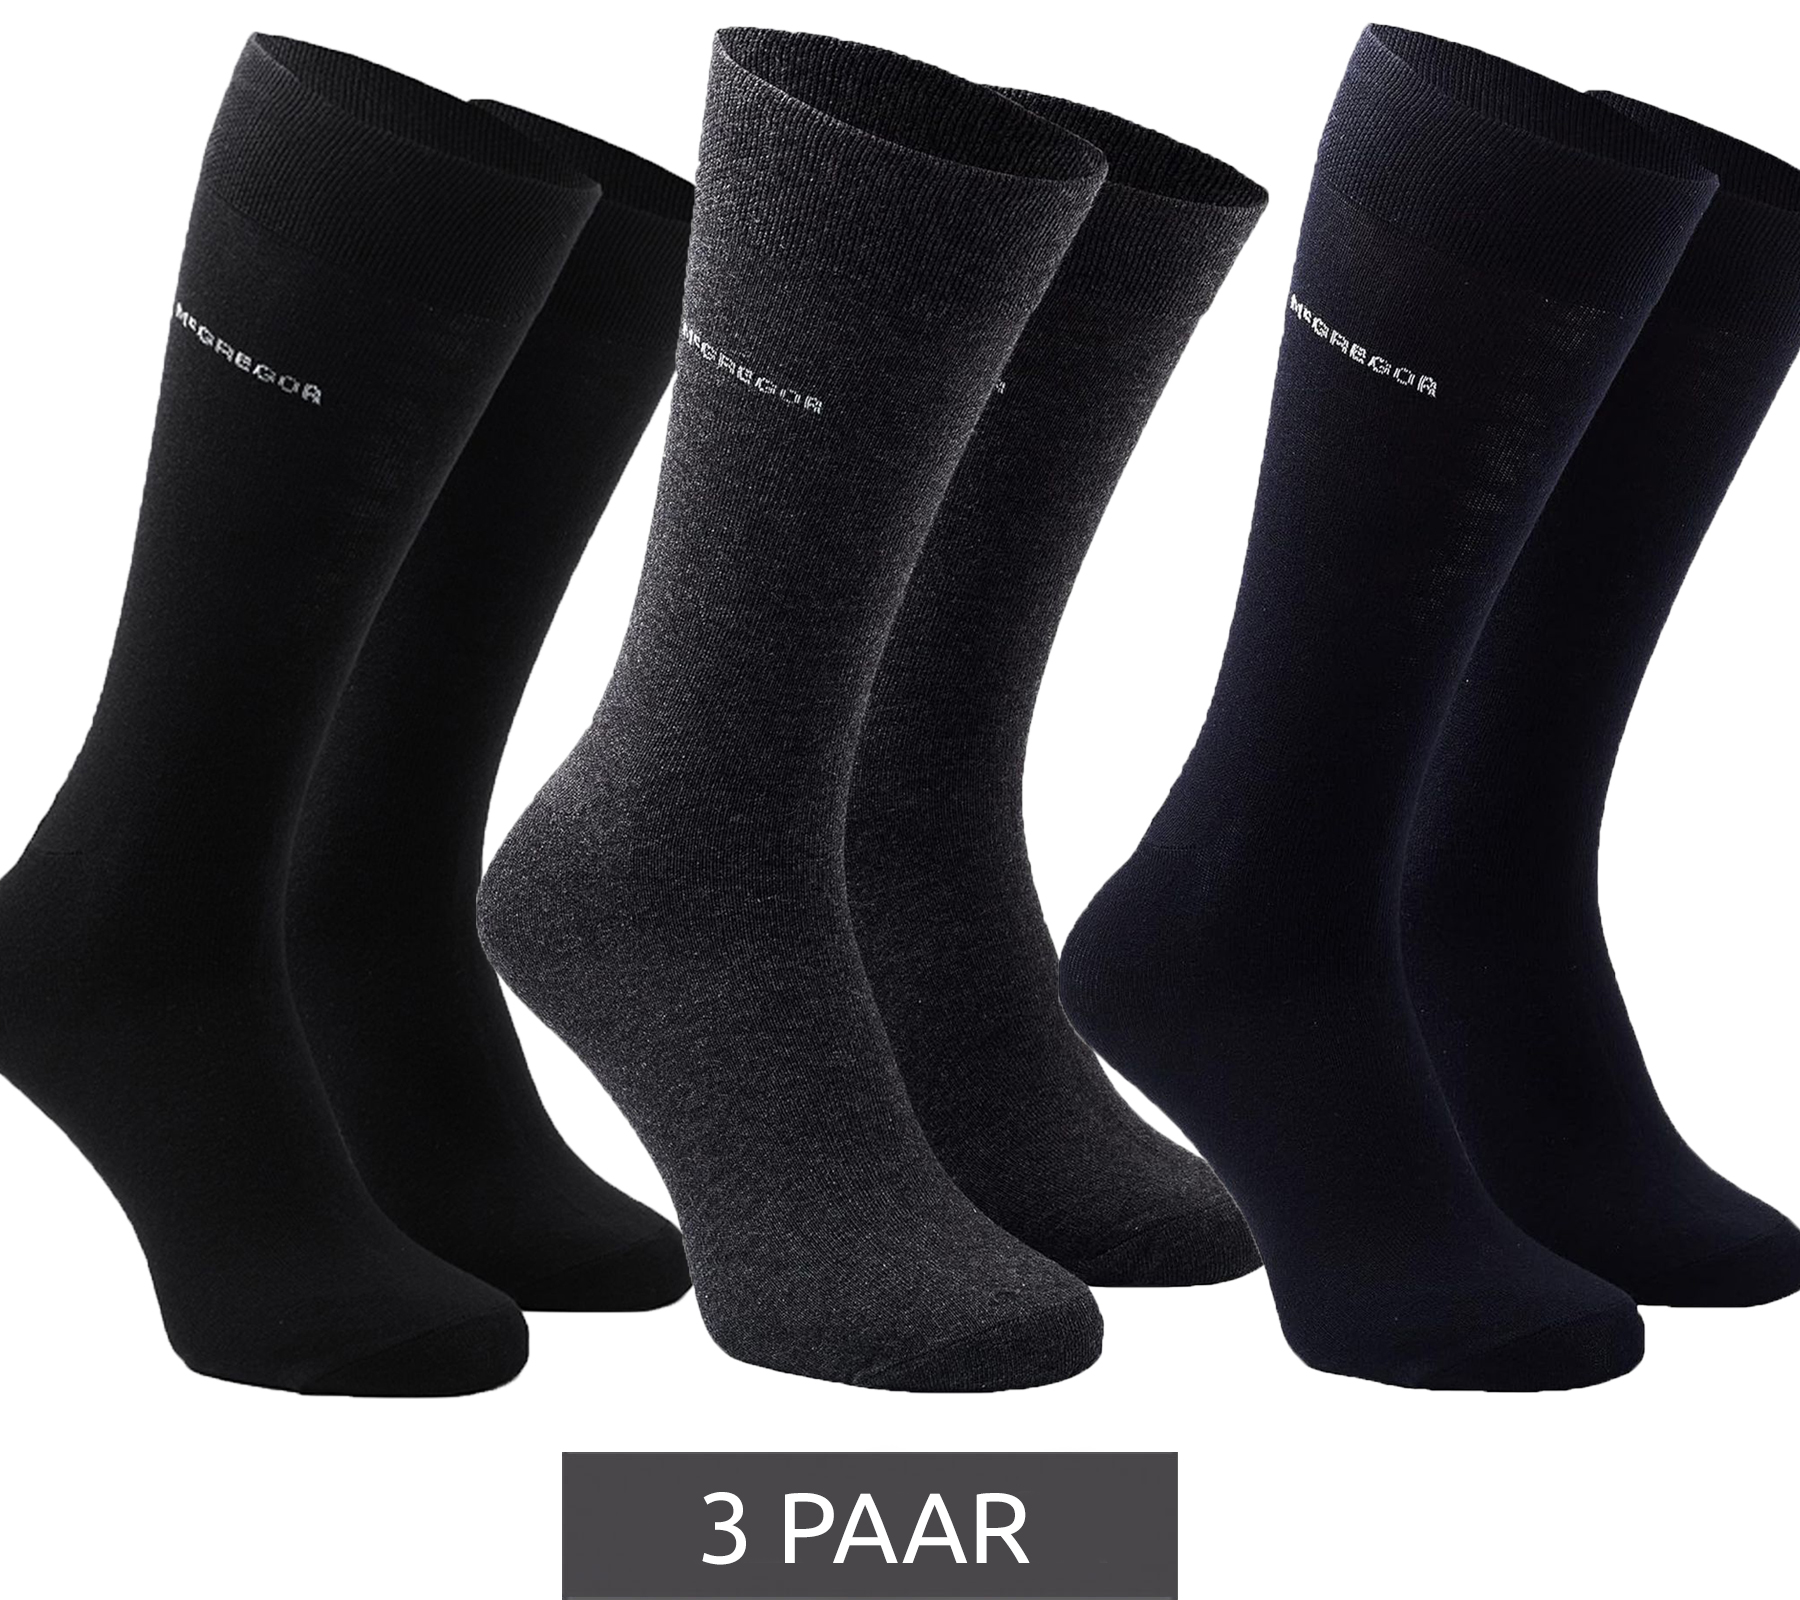 3 Paar McGREGOR Strümpfe Freizeit-Socken Oeko-Tex zertifiziert Business-Socken im Vorteilspack Schwarz Dunkelblau oder Grau